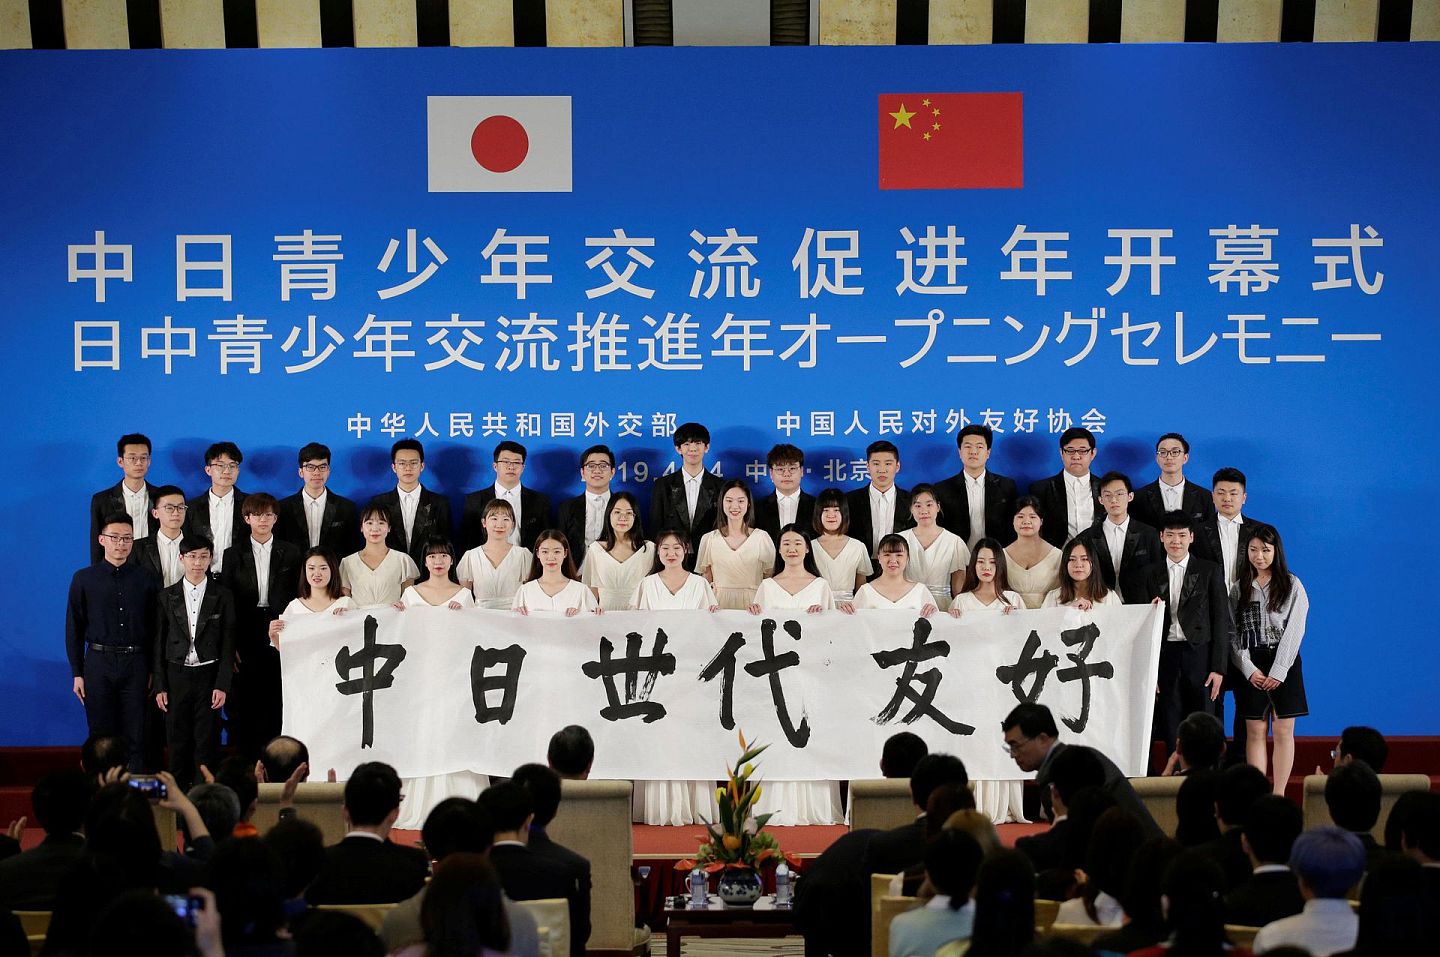 2019年4月14日，在北京钓鱼台国宾馆举行的中日青年交流年开幕式上，日本和中国女孩举着“中日友好世代相传”标语。（Reuters）